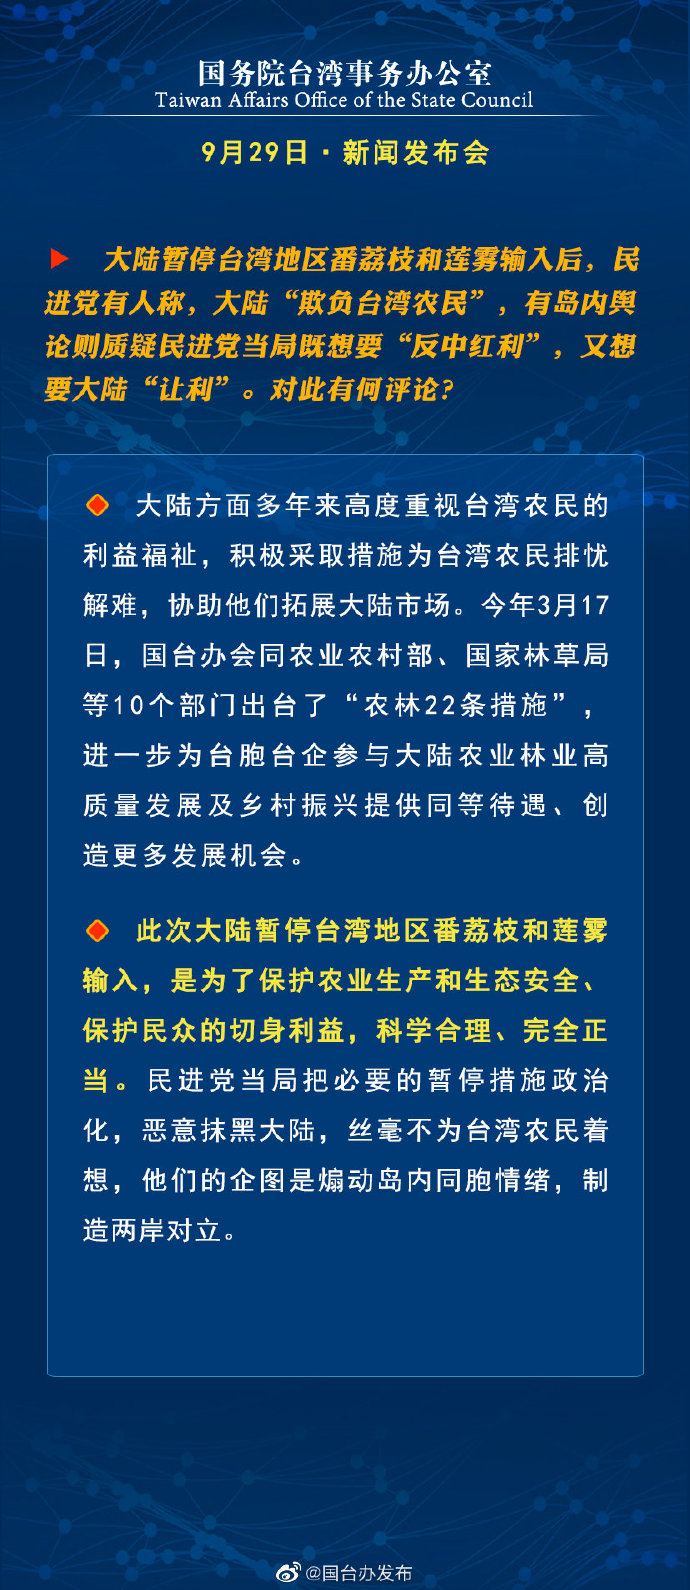 国务院台湾事务办公室9月29日·新闻发布会